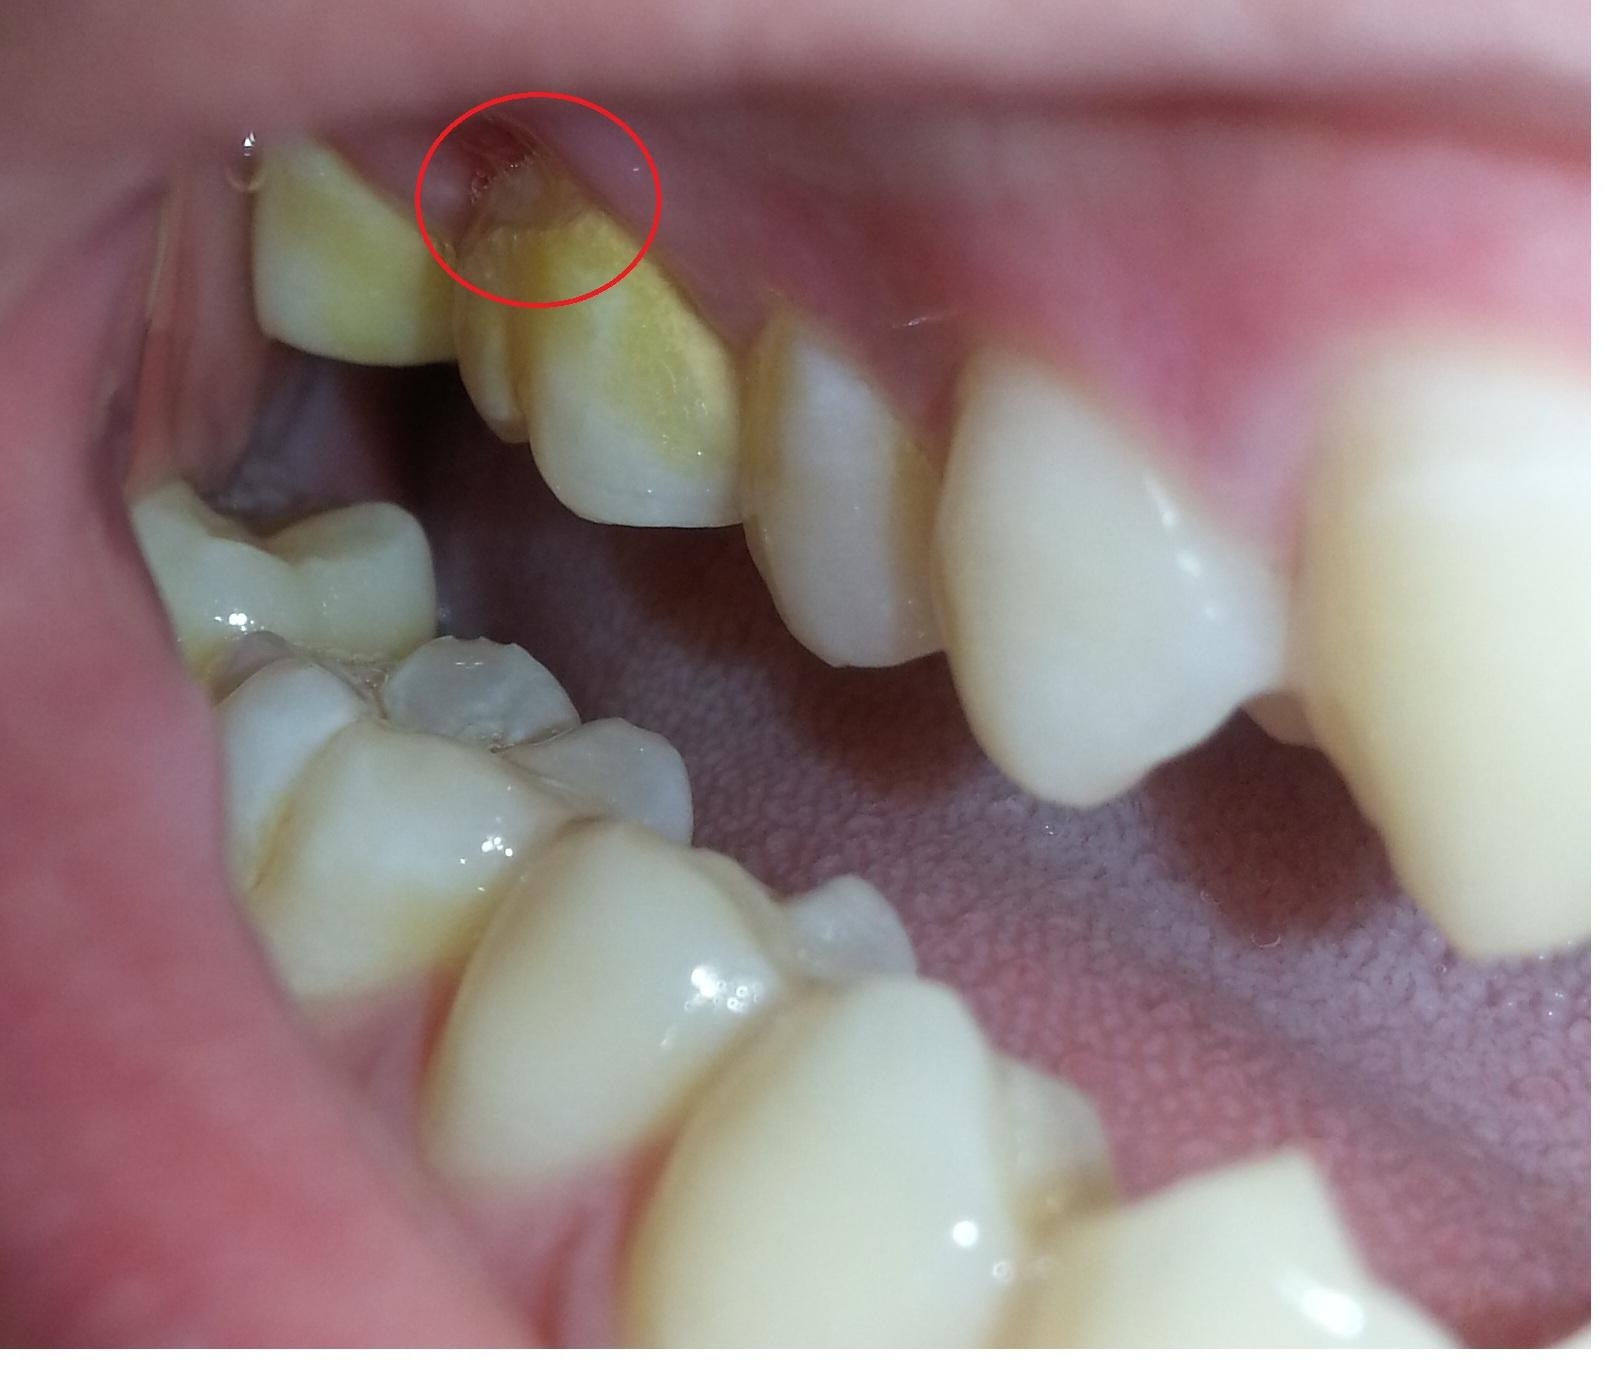 牙齒有酸酸的感覺，牙齒是怎麼了呢？ part IV:牙根裂掉 - 牙科美容資訊 - 美容牙科張凱榮醫師